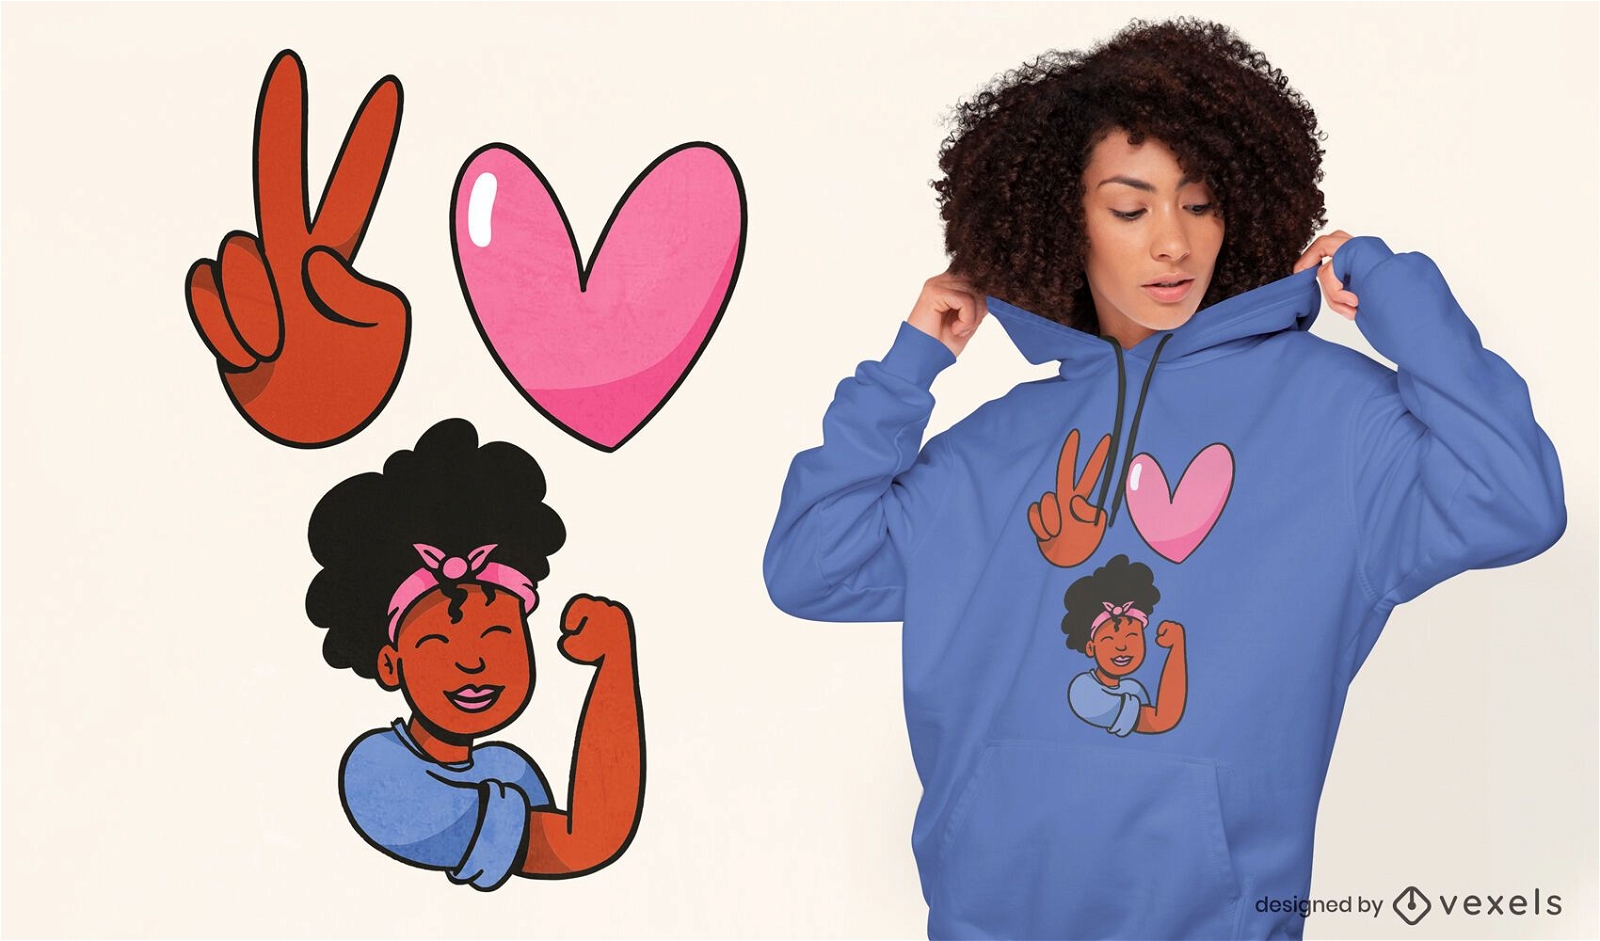 Design de t-shirt de mulher negra com melanina e amor da paz